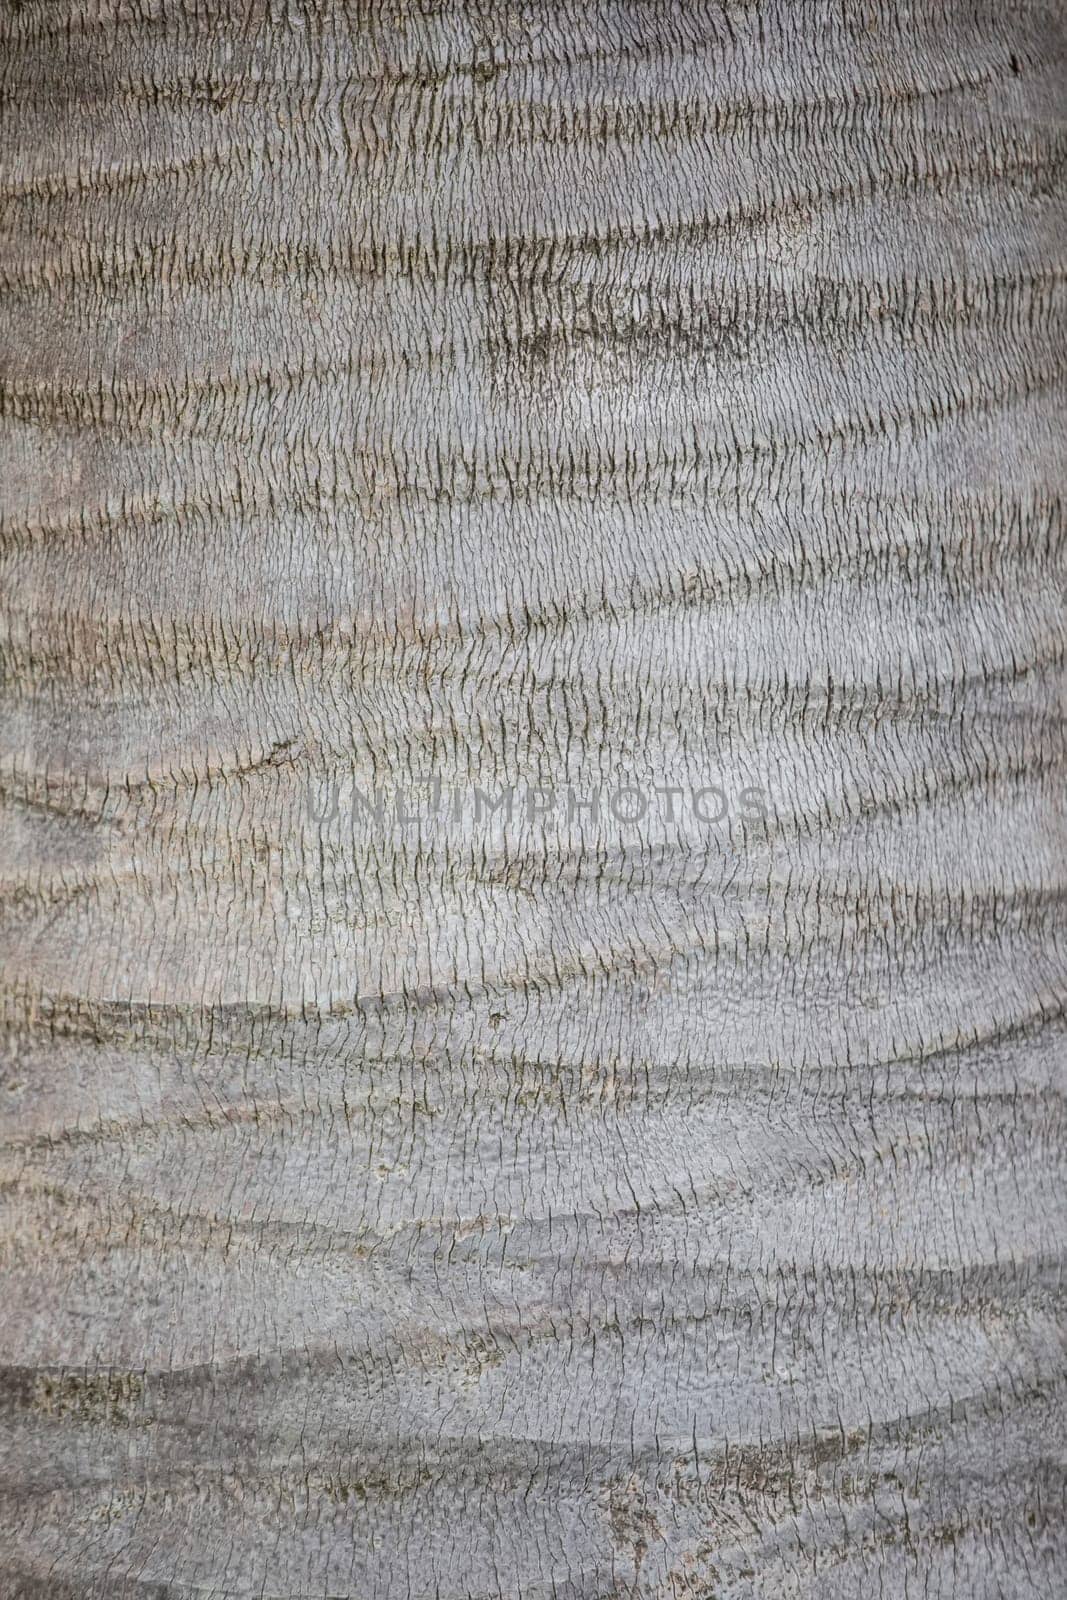 The texture of the bark of a gray coconut tree. Tropical tree bark. by Sviatlana